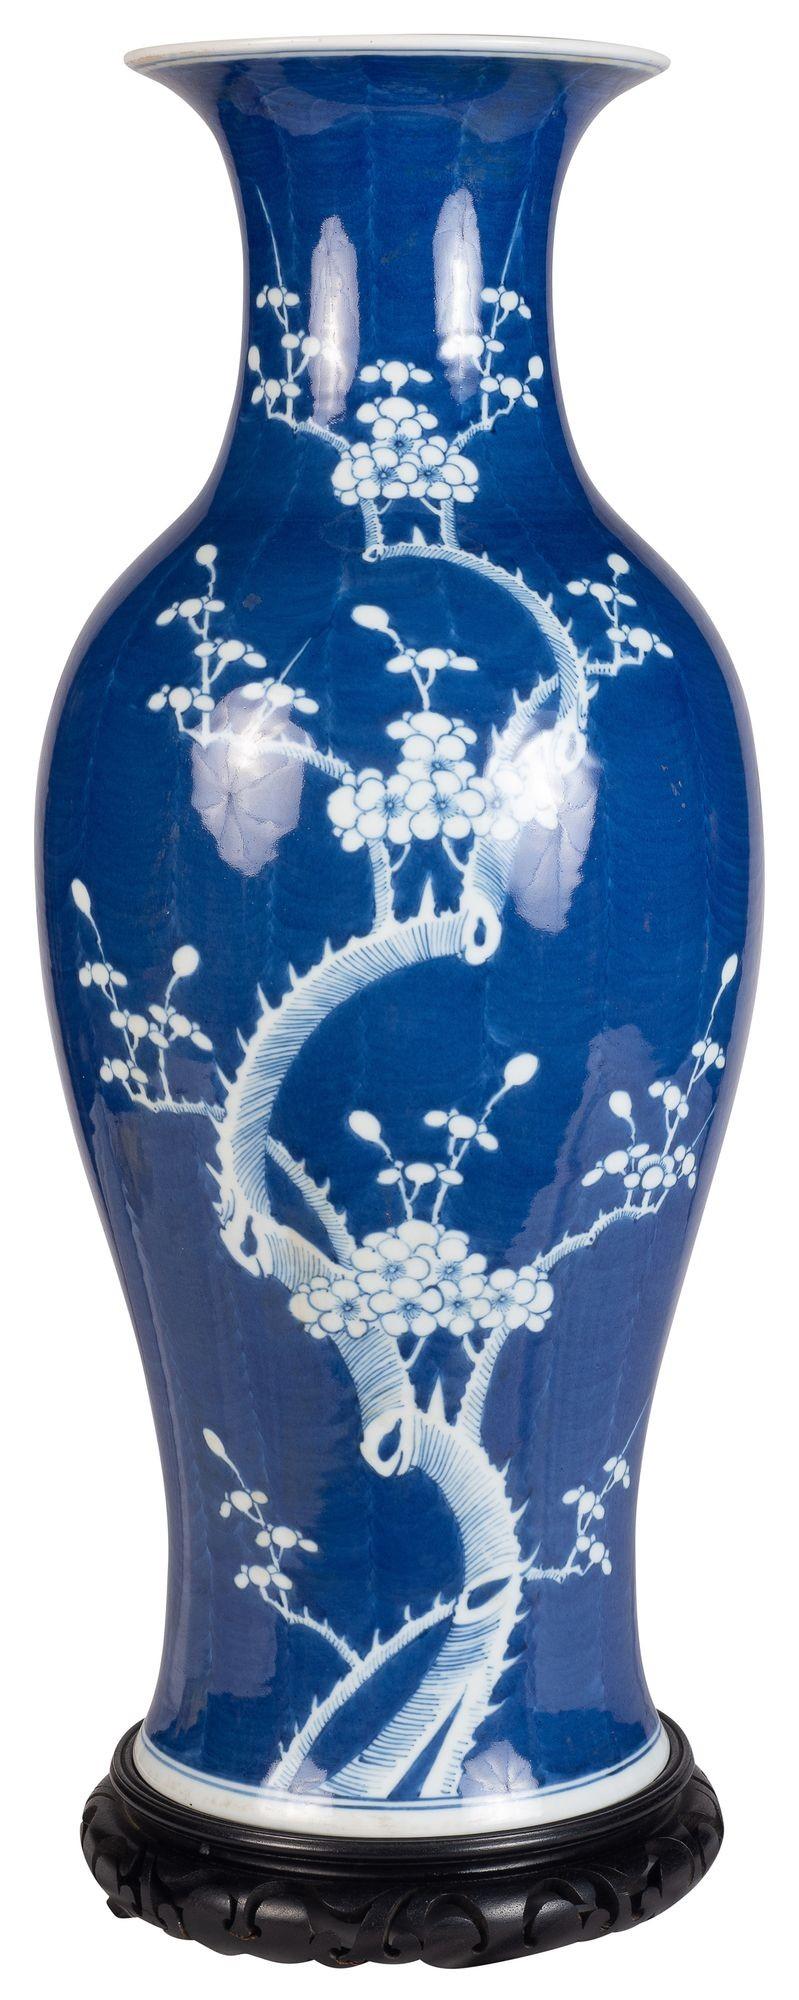 Impressionnant vase/lampe à fleurs de prunus en bleu et blanc de la Chine de la fin du XIXe siècle, vers 1890

Lot 74 N/H